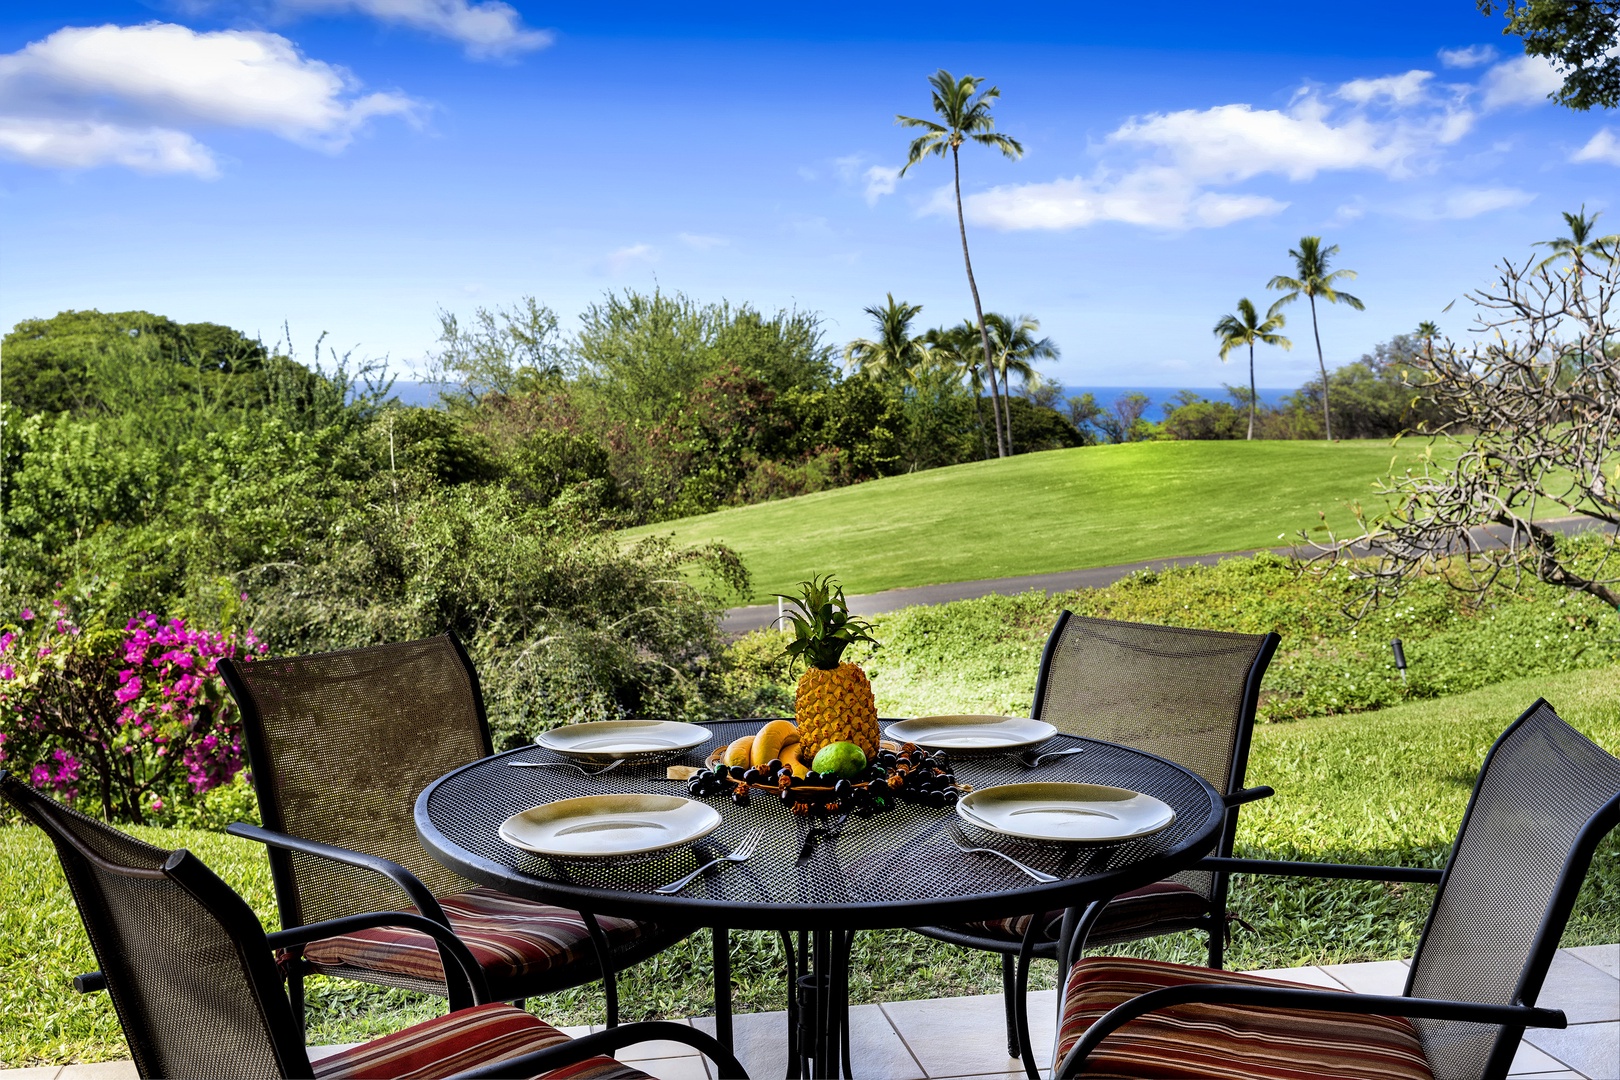 Kailua Kona Vacation Rentals, Keauhou Akahi 302 - Keauhou Akahi 302 / Golf course & Ocean Views!